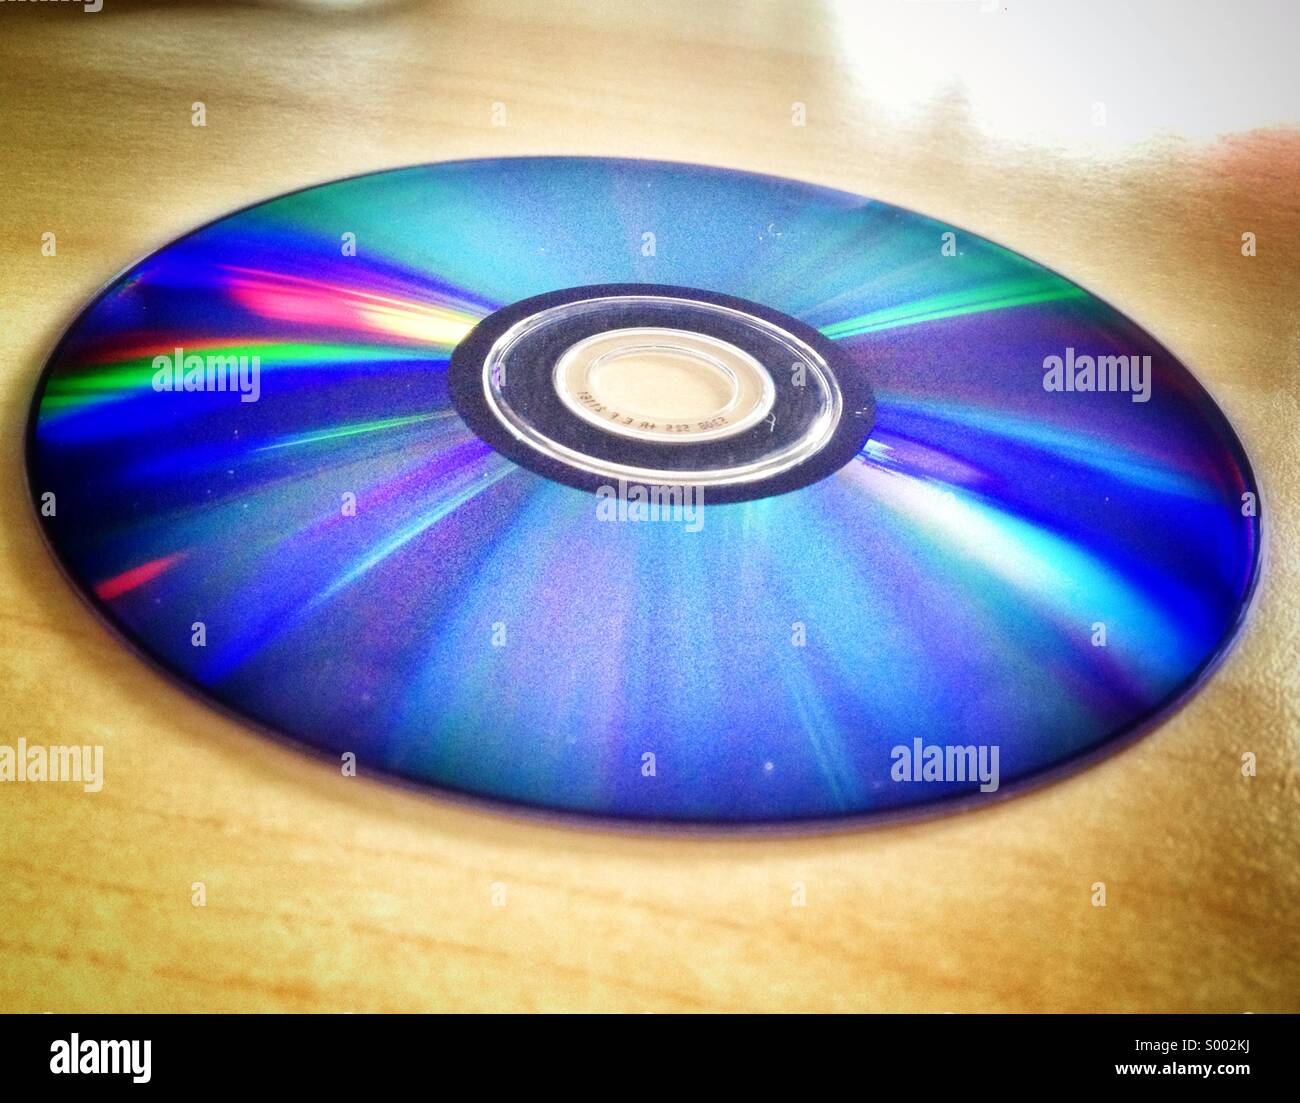 Disque compact, DVD, Close up avec la réflexion de la lumière Banque D'Images